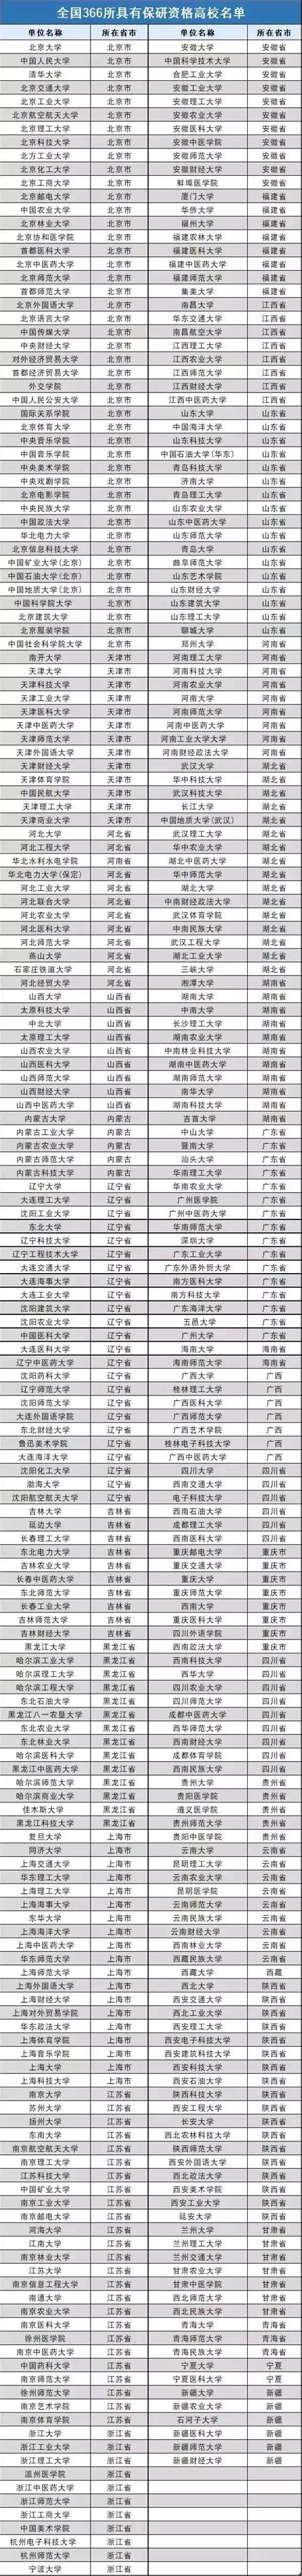 江苏师范大学美术学院2021年硕士推免生（保研）录取名单公示